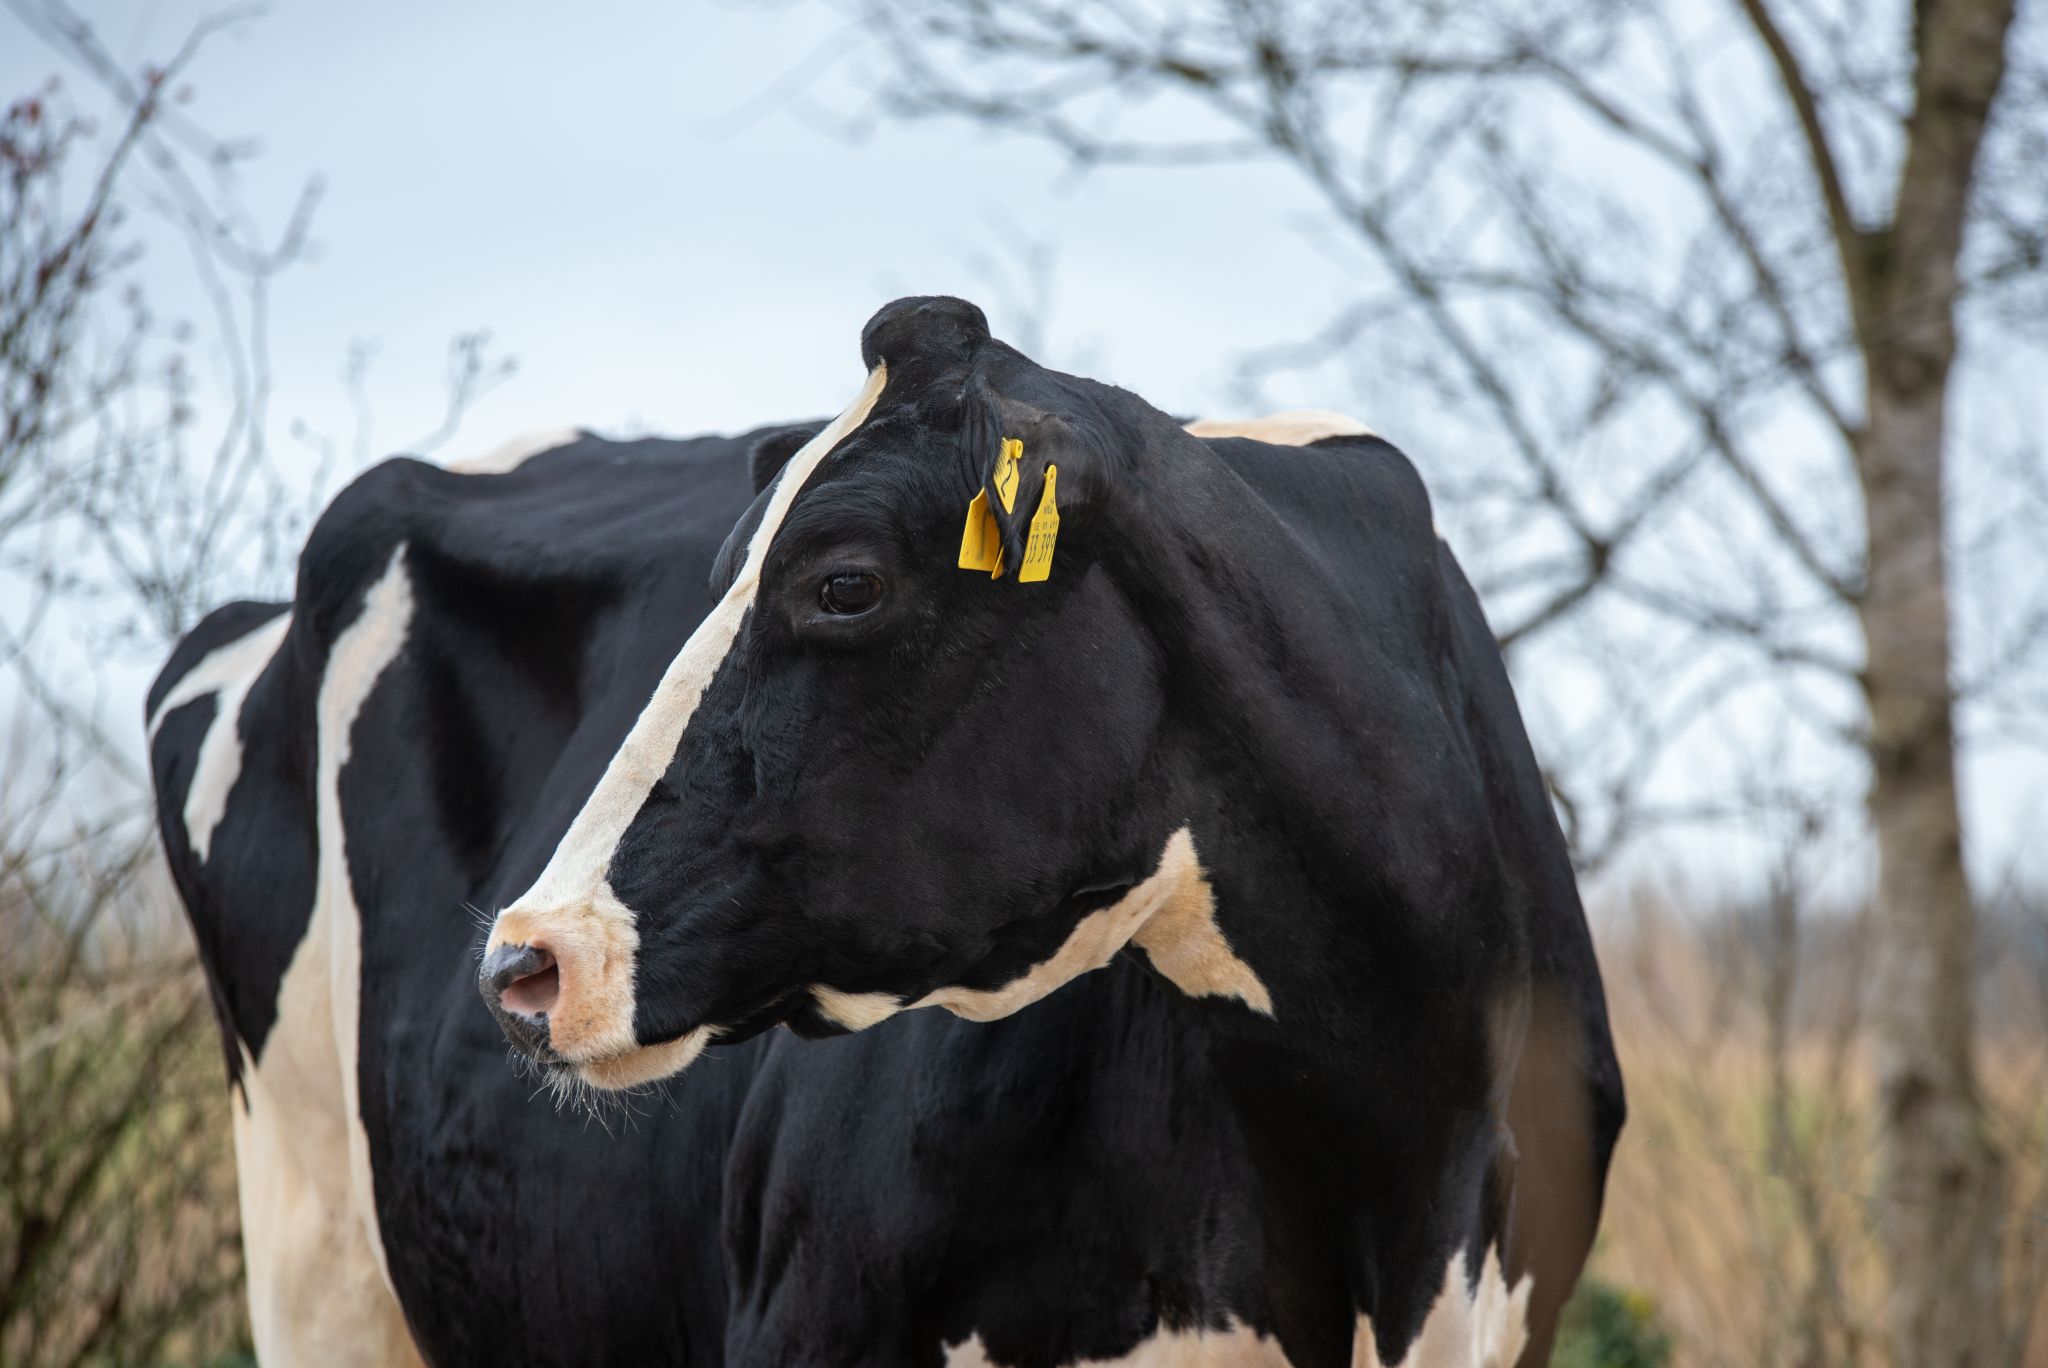 Melona (v. Minister) aus dem Betrieb Baumann GbR in Oldendorf ist die 4. Kuh mit einer Lebensleistung von 200.000 kg Milch in Deutschland (Foto: D. Warder)
© Dorothee Warder, BRS